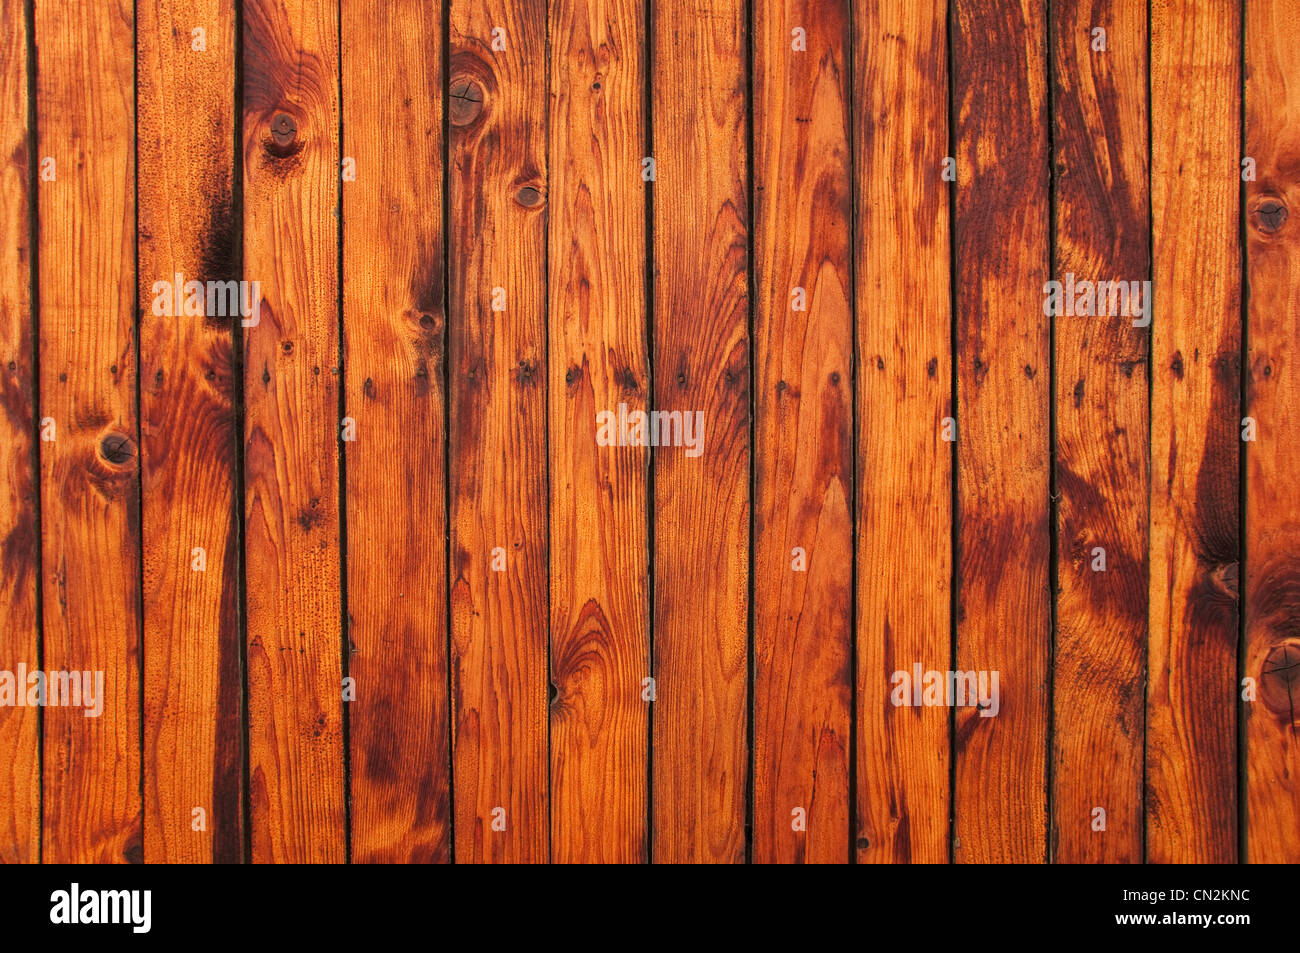 Texture in legno, vecchi di tavole di legno. Immagine può essere utilizzato come sfondo per il vostro design. Foto Stock